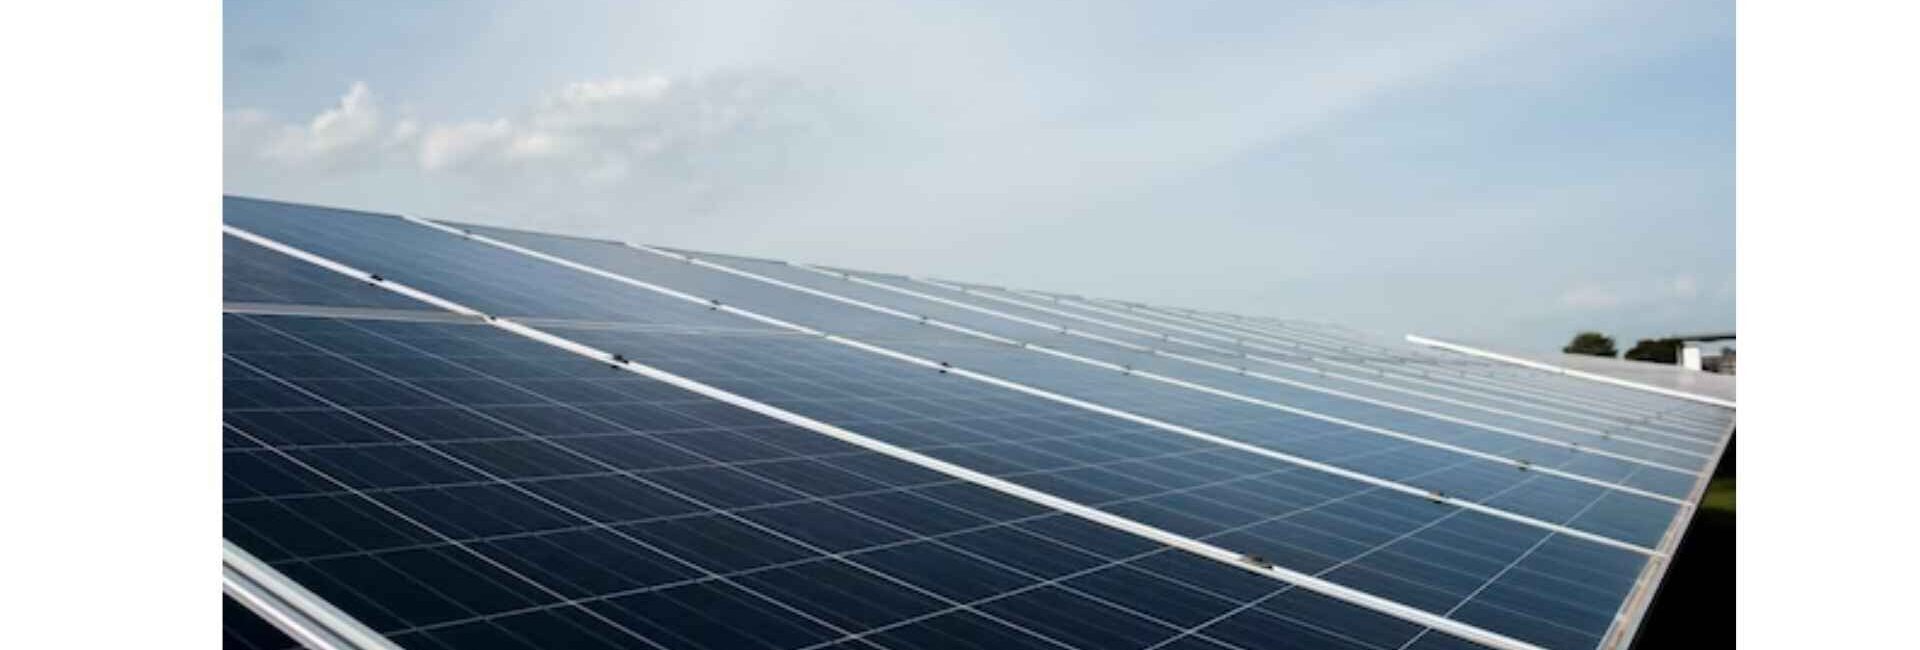 Shree ji Solar Power Solution - Solar system Dealer in Noida